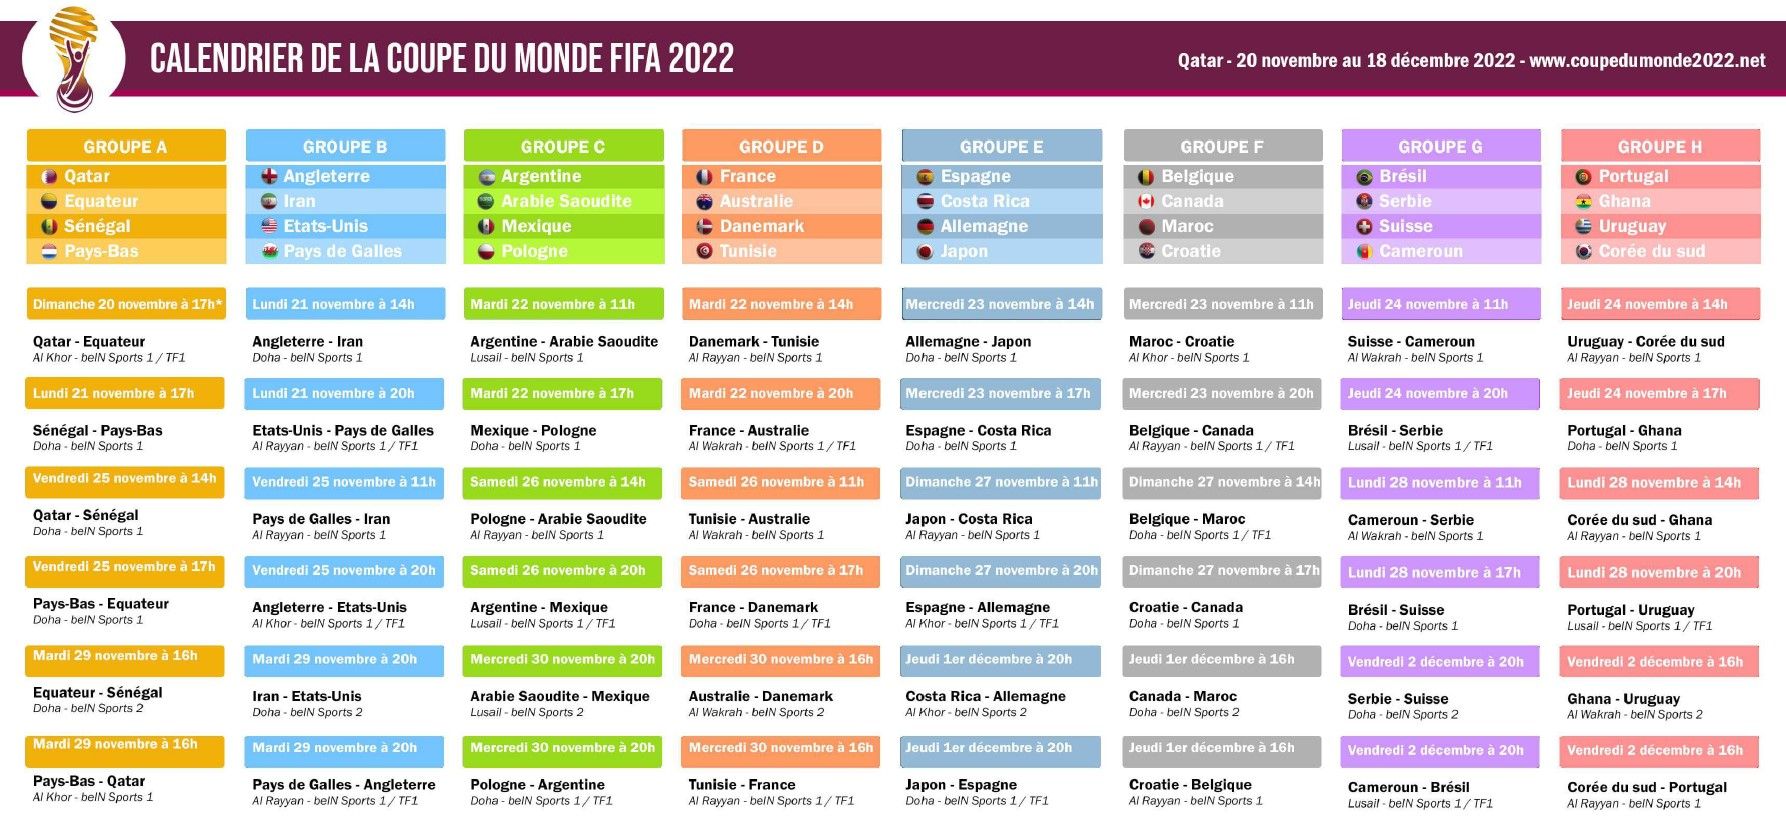 Calendrier de la phase de groupes de la coupe du monde de football Qatar 2022